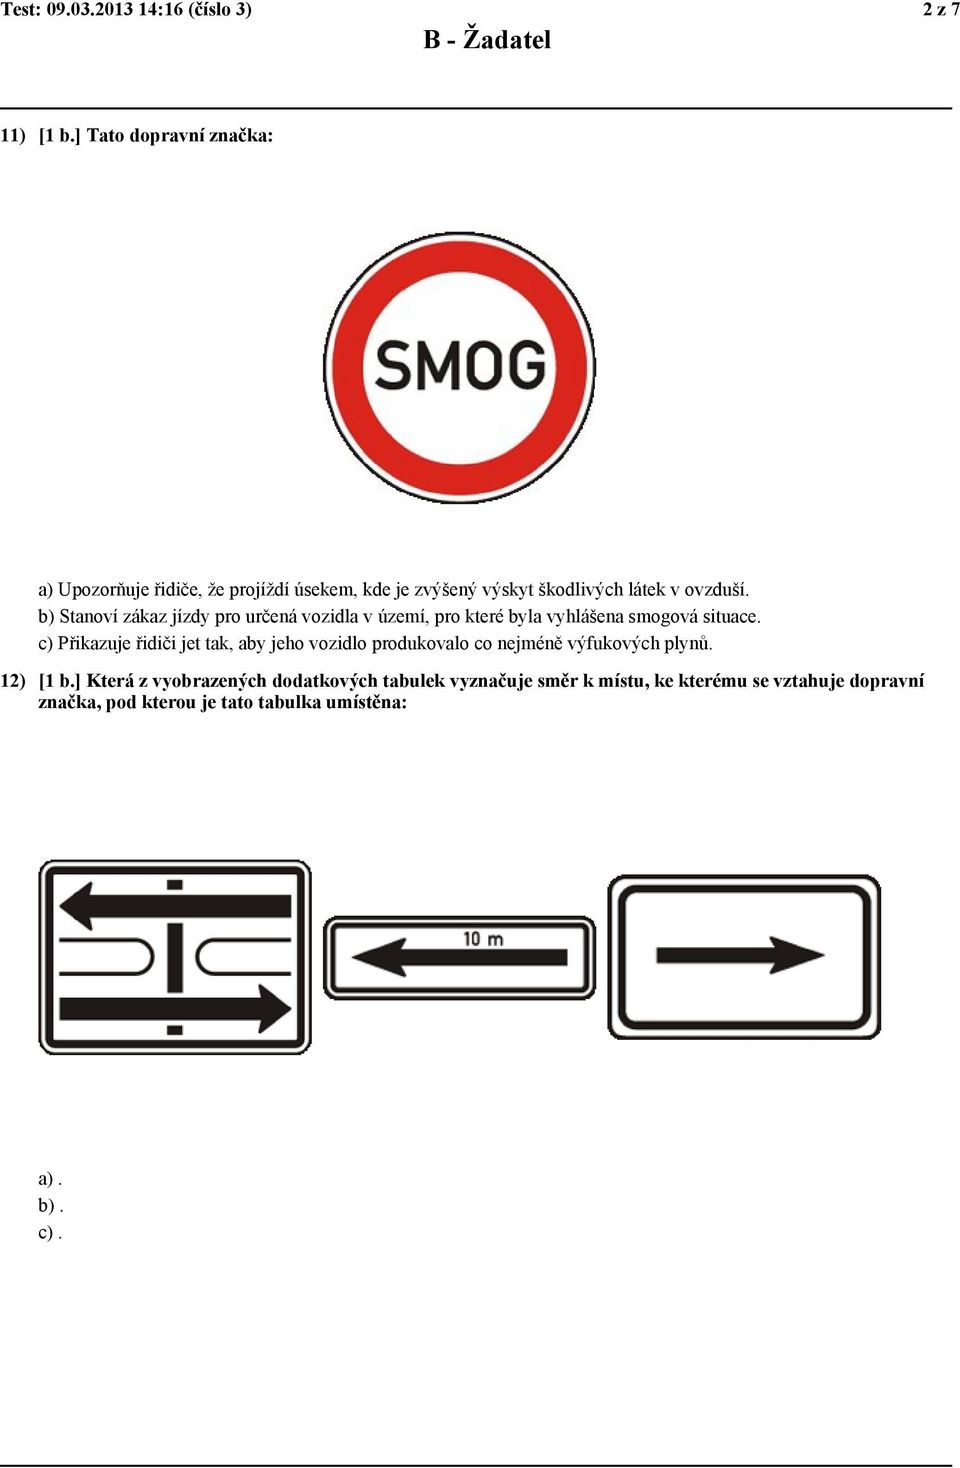 b) Stanoví zákaz jízdy pro určená vozidla v území, pro které byla vyhlášena smogová situace.